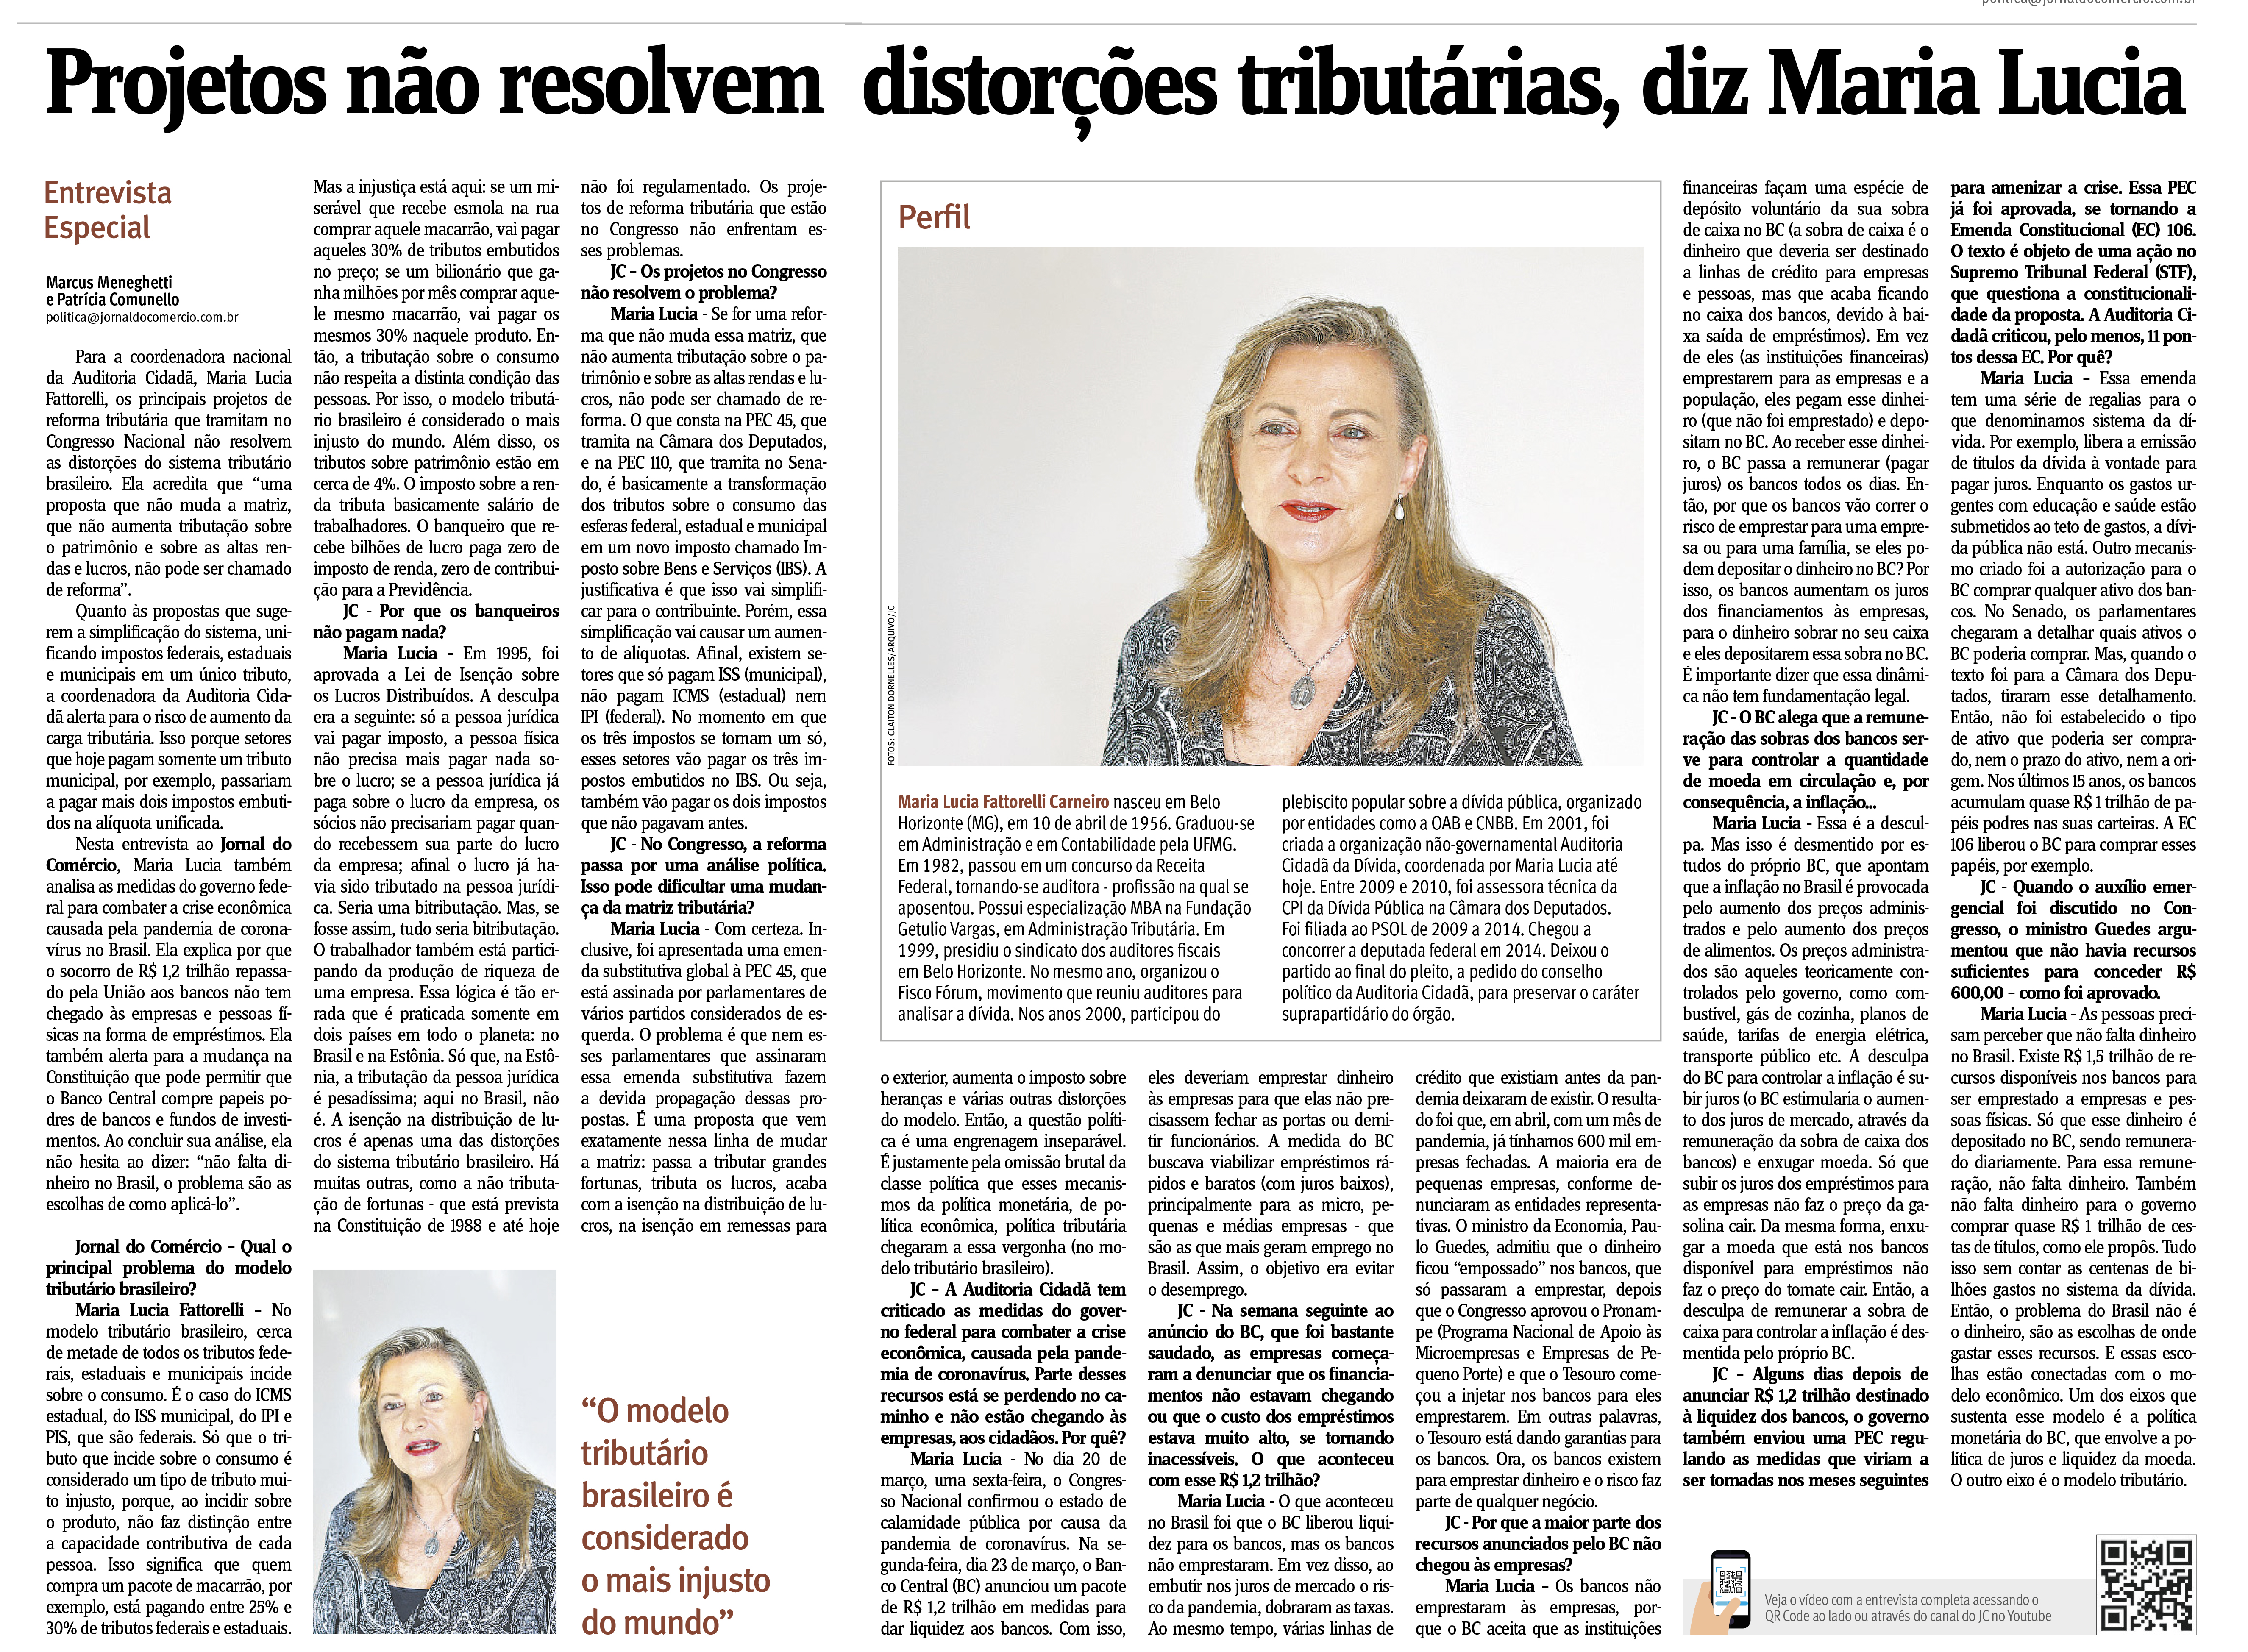 Jornal do Comércio: Projetos não resolvem distorções tributárias, diz Maria Lucia